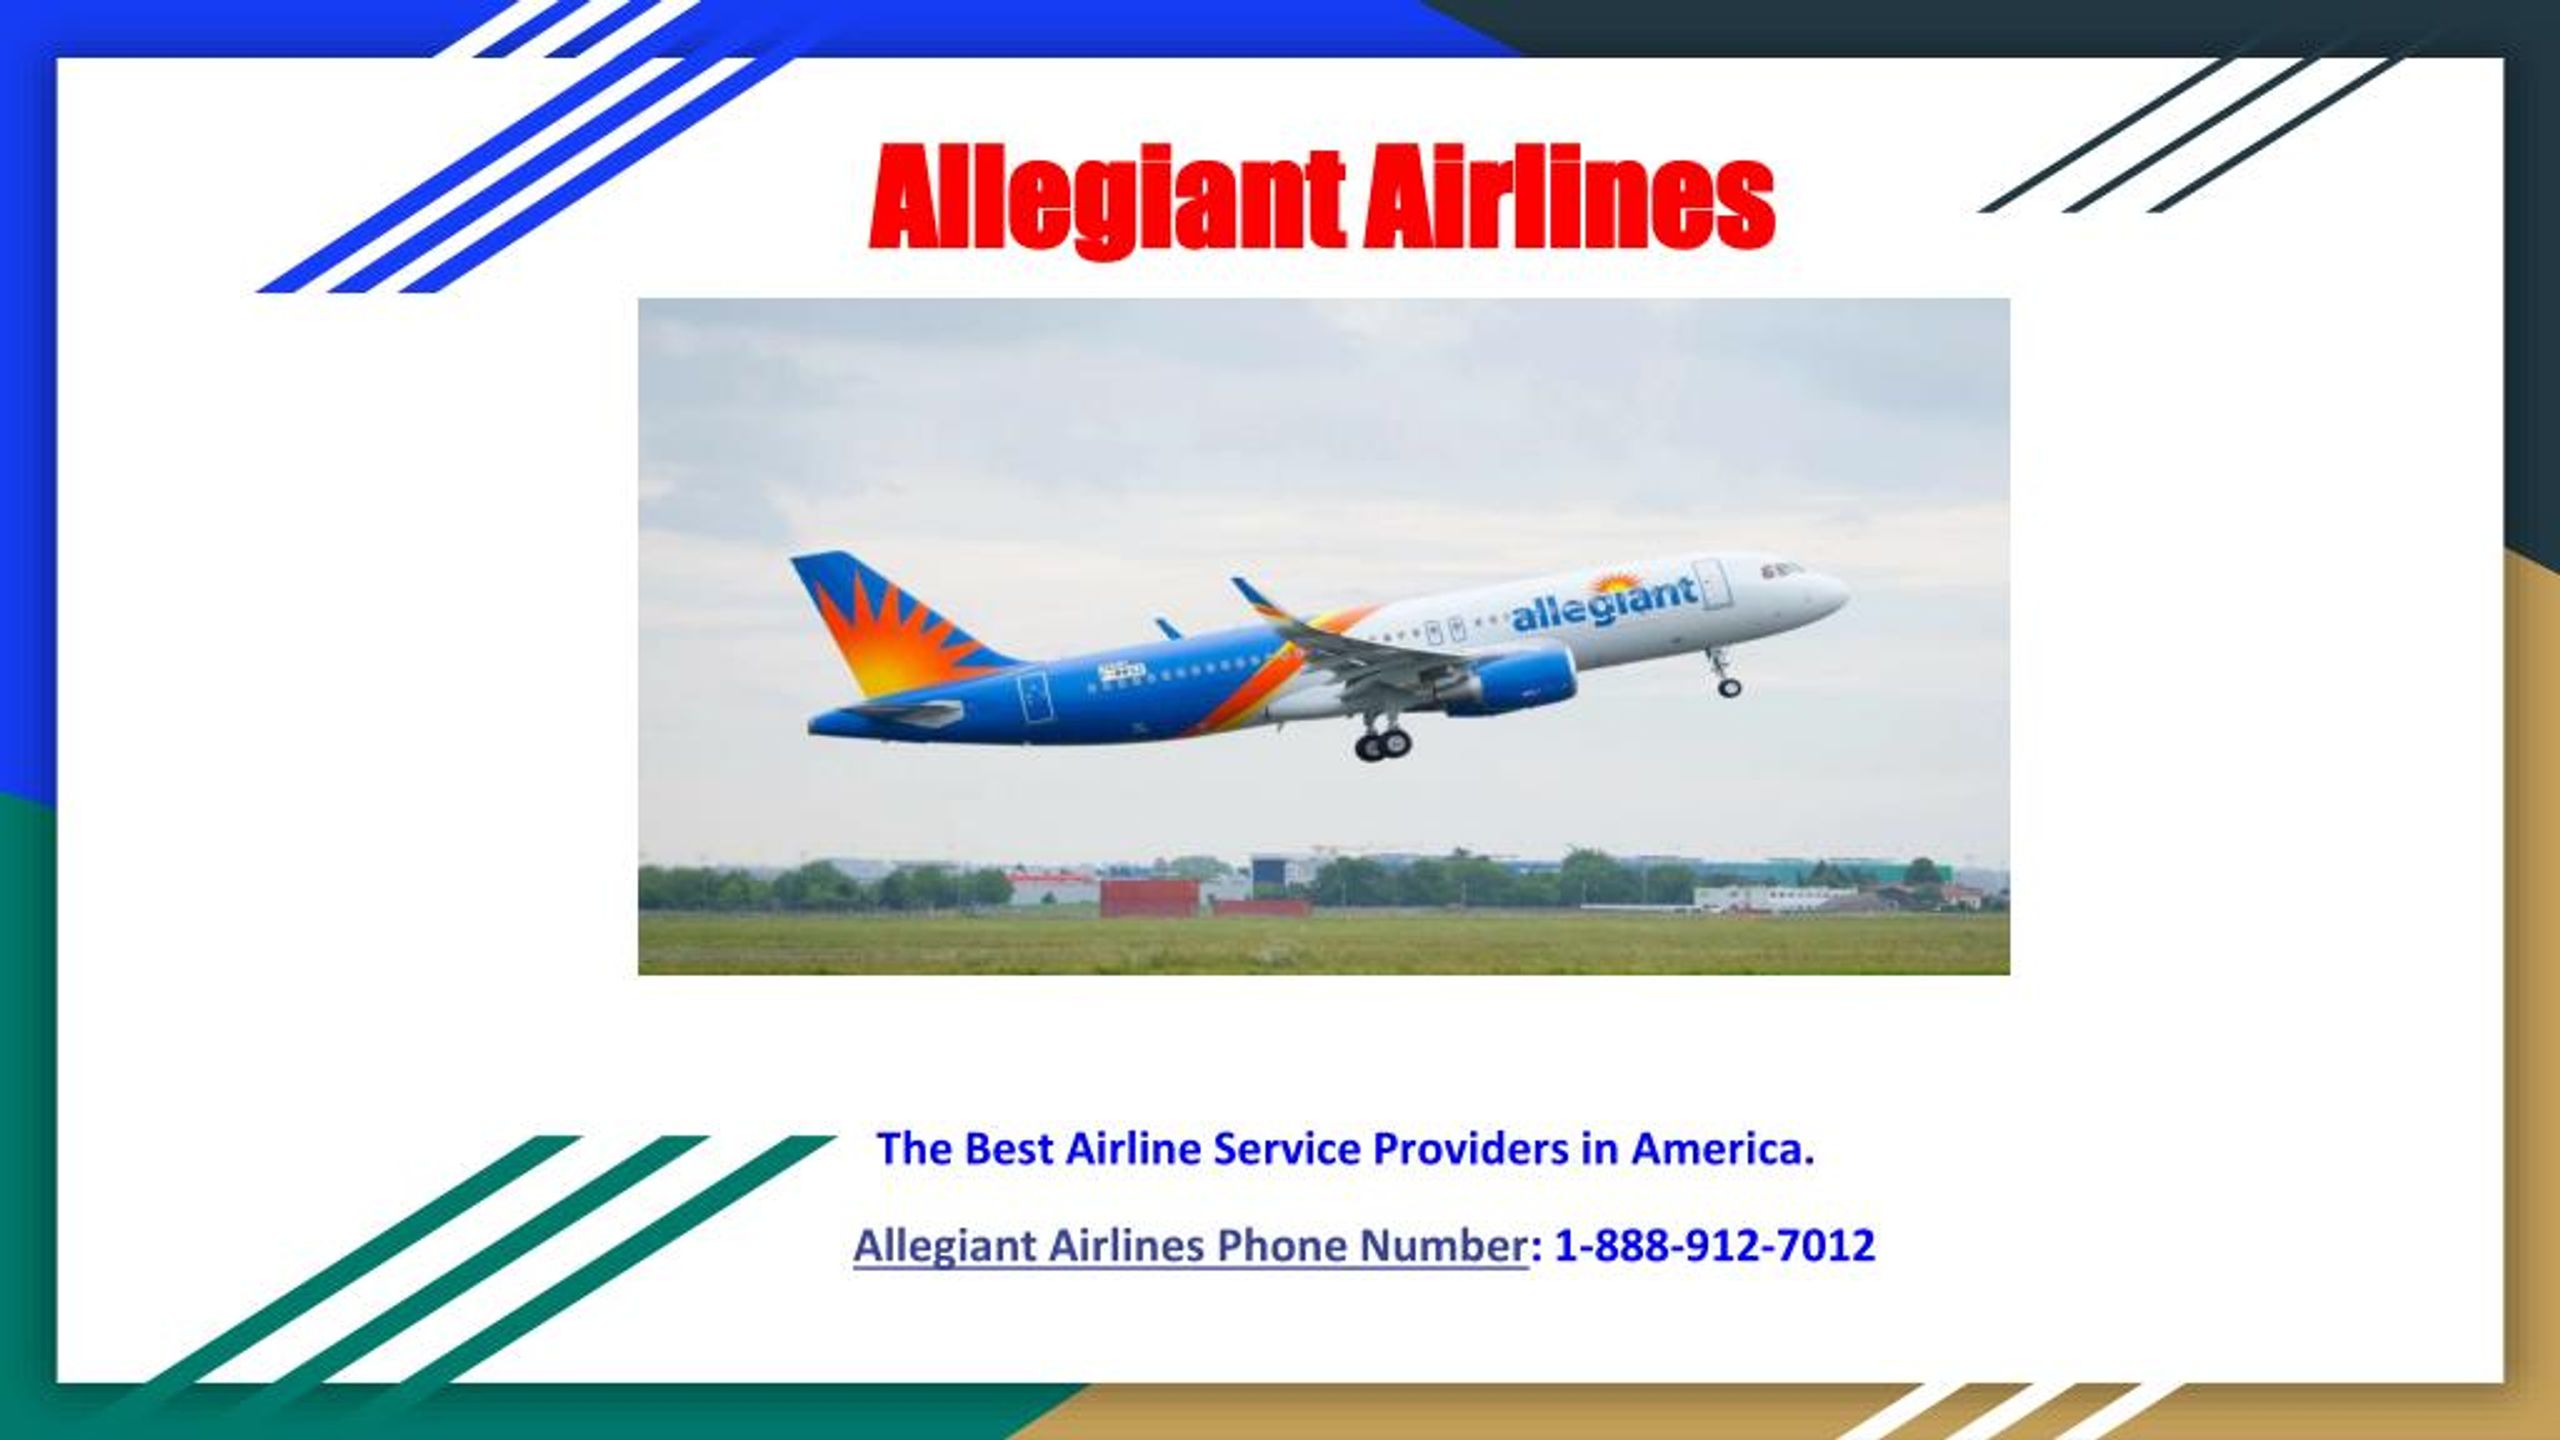 PPT - Allegiant Airlines Flights PowerPoint Presentation - ID:7968309